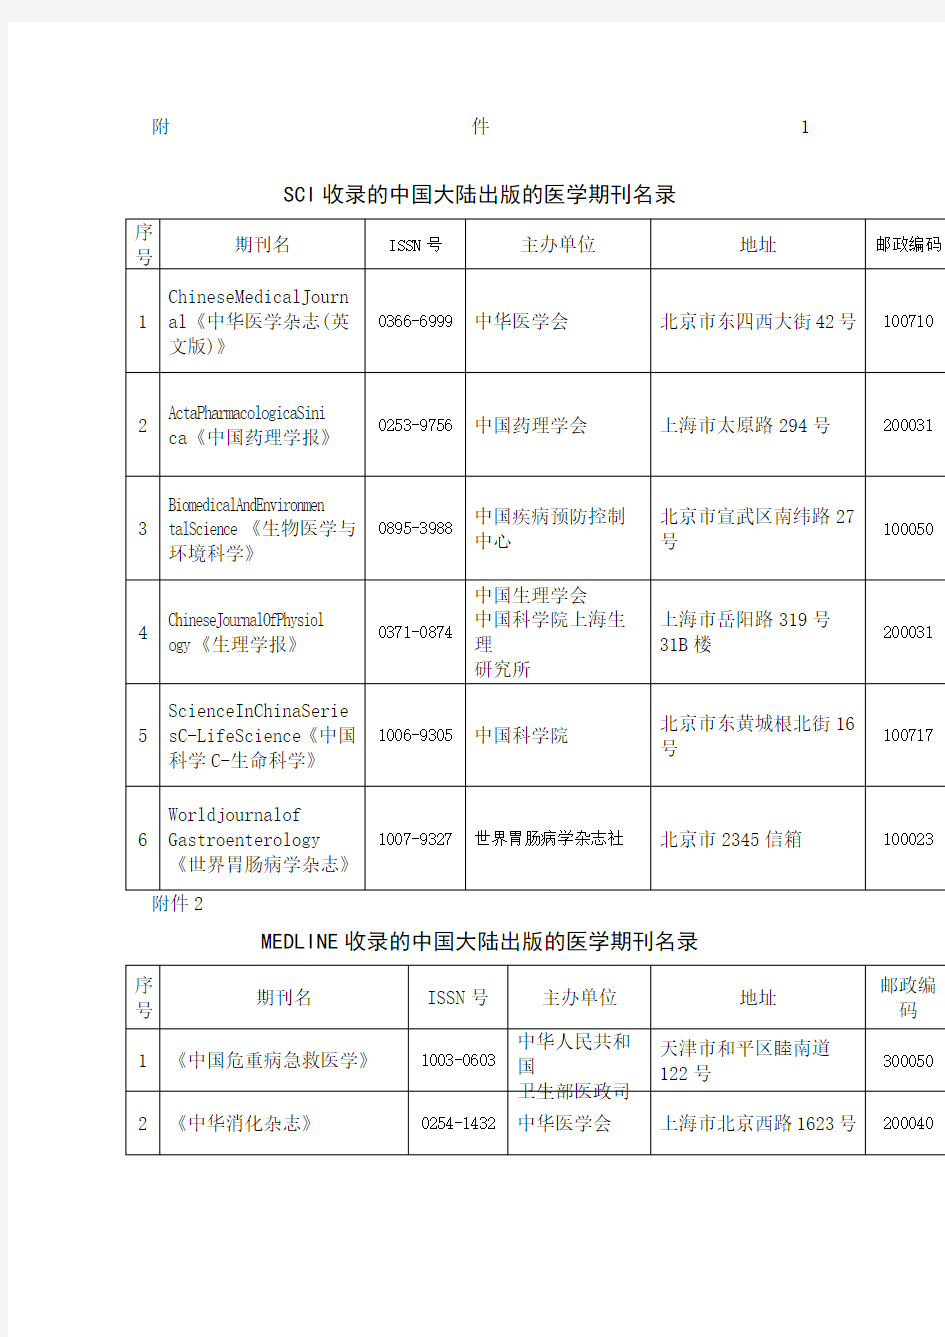 SCI收录的中国大陆出版的医学期刊名录